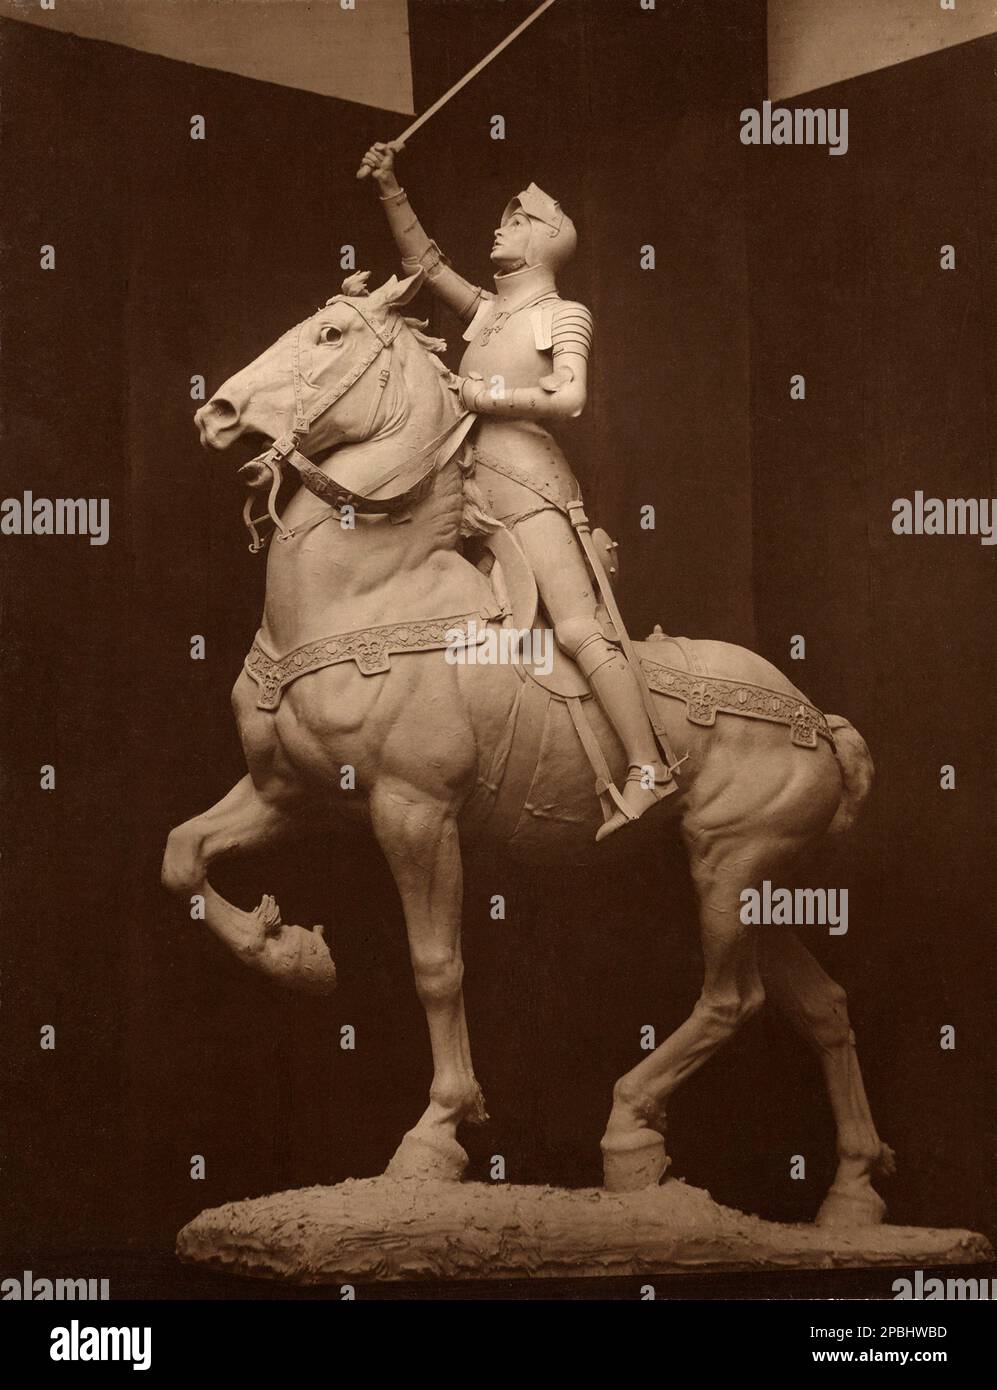 1915 , New York , USA : The french Sainte JEANNE D'ARC ( Saint Jeane of Arc - Santa Giovanna d' Arco ) monument for New York and the french town of Blois ( France ) by the american woman sculptor Anna Hyatt Huntington ( 1876 -1973 ) - SANTO -  SANTA - d' Arc - RELIGIONE CATTOLICA - CATHOLIC RELIGION - portrait - ritratto - Roman Catholic Church - profilo - profile  - monumento equestre - cavallo - horse - armure - armatura - ARTS - ARTE -  - SCULPTURE - SCULTURA - SCULPTOR - SCULTORE - SCULTRICE - statua - statue ----  Archivio GBB Stock Photo